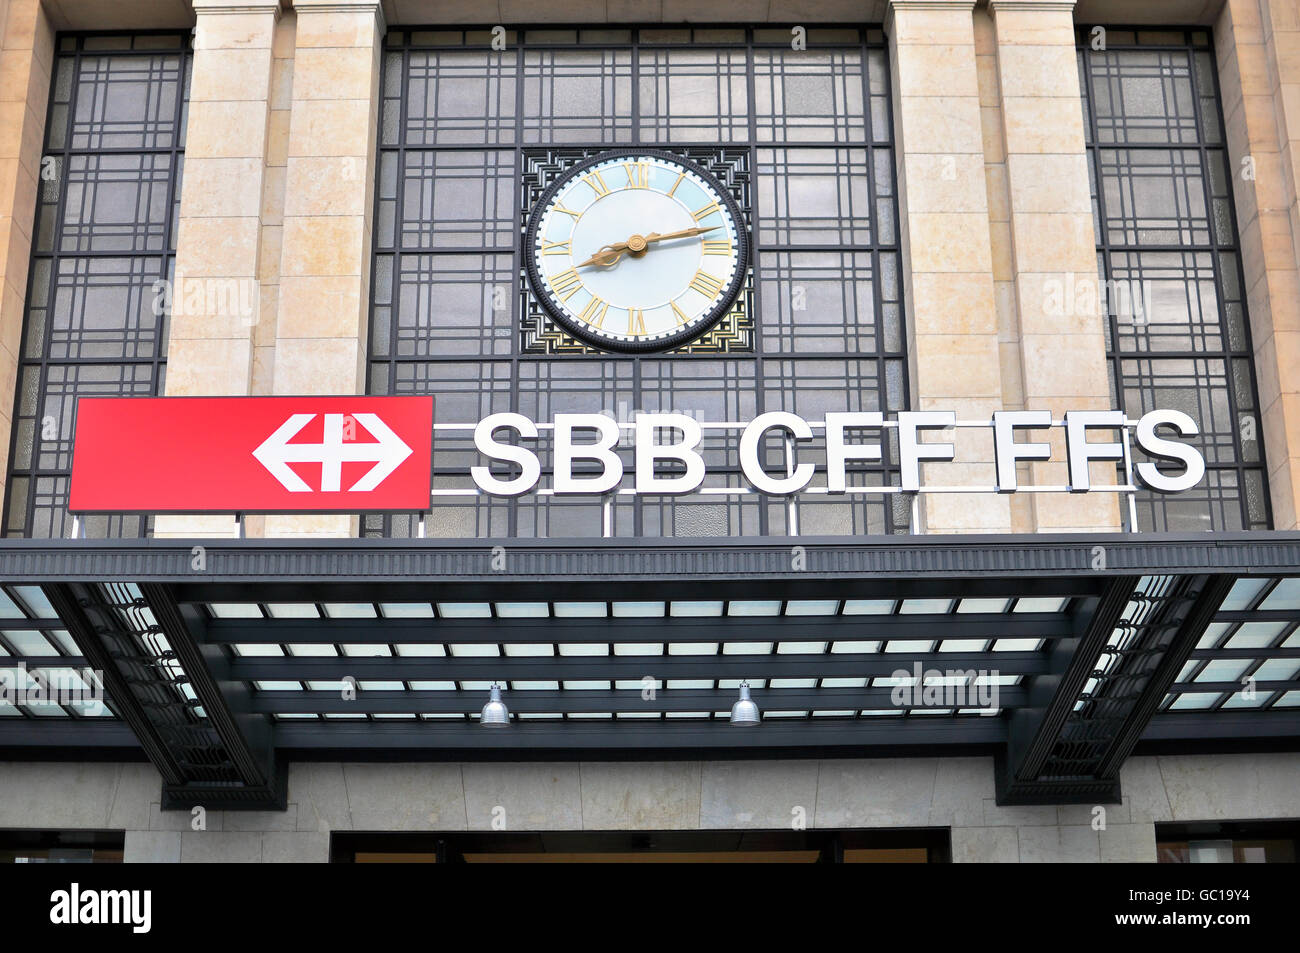 Genf, Schweiz - 17. AUGUST: Logo der SBB im Bahnhof von Genf am 17. August 2015. Stockfoto